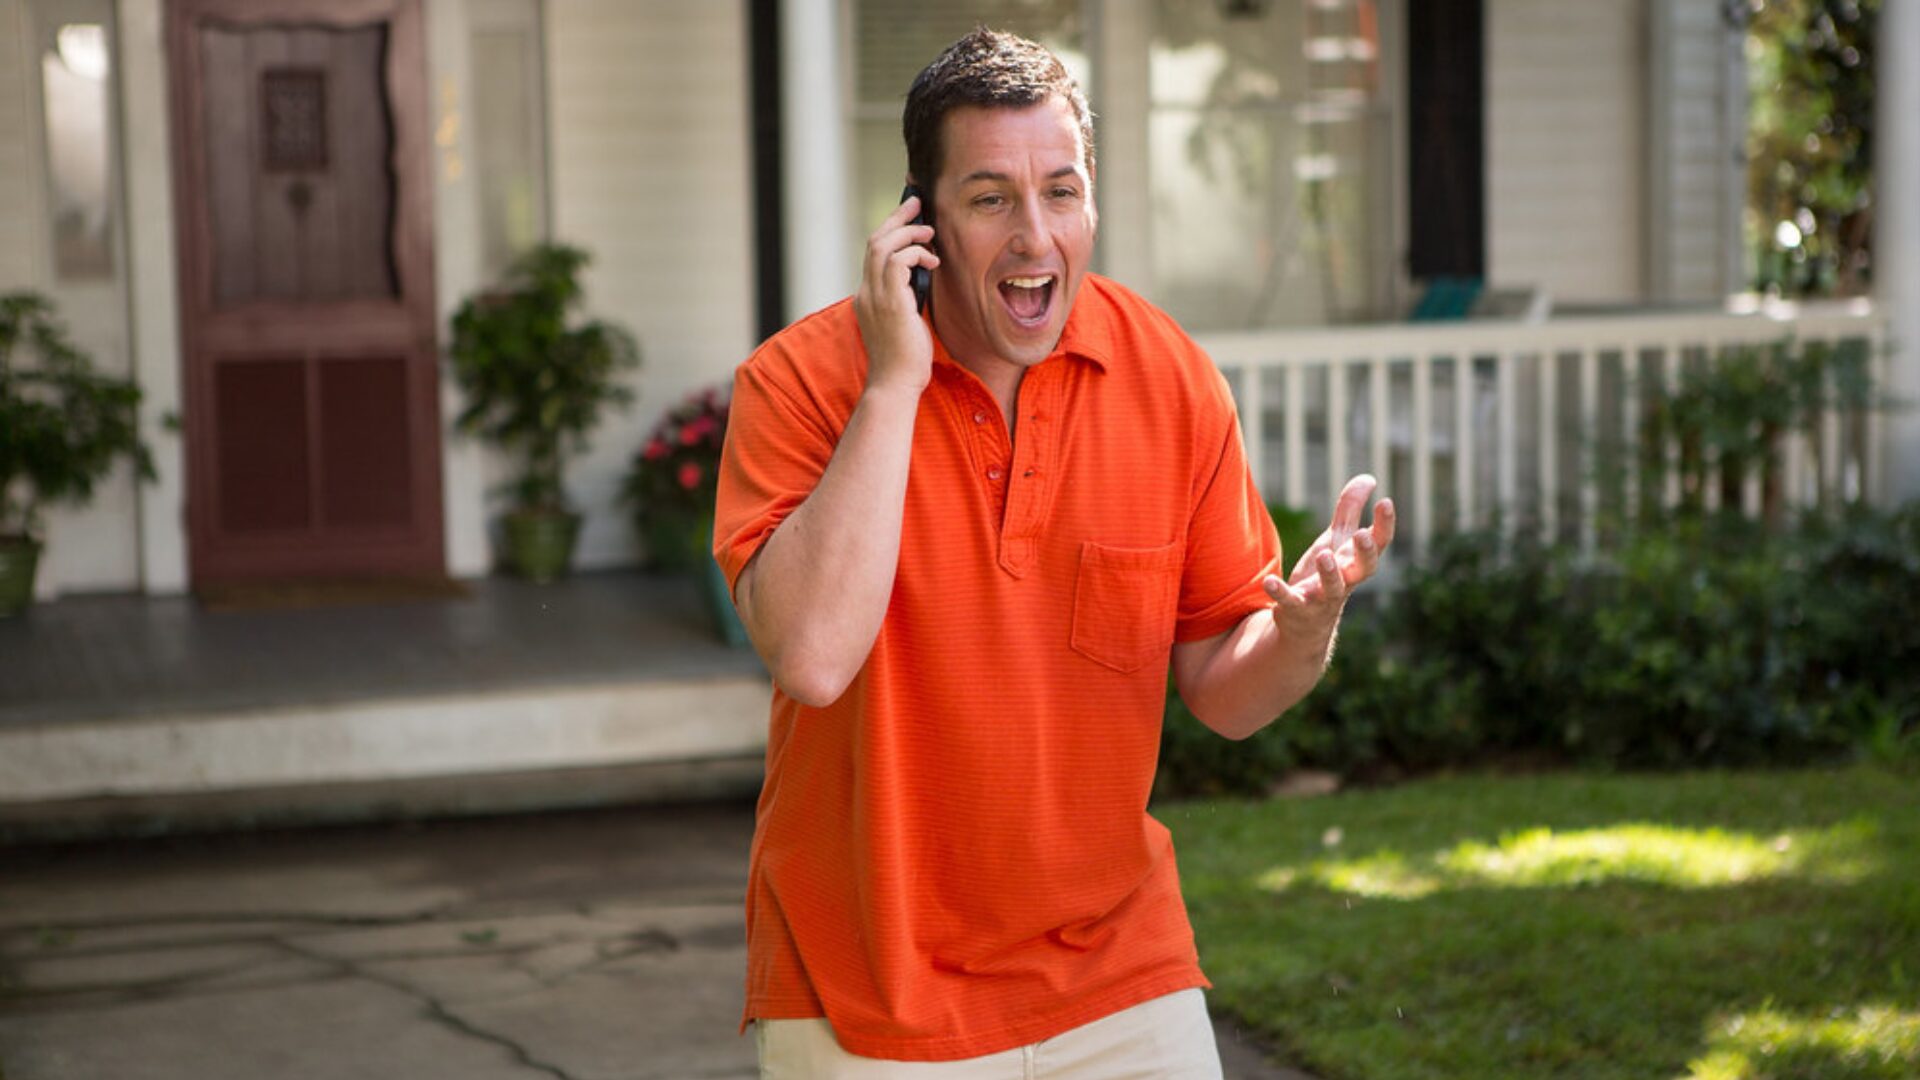 imagem onde ele esta atuando em algum filme, ele esta em frente a uma casa branca estadunidense com uma camiseta laranja e esta em uma ligação com cara de surpresa e felicidade